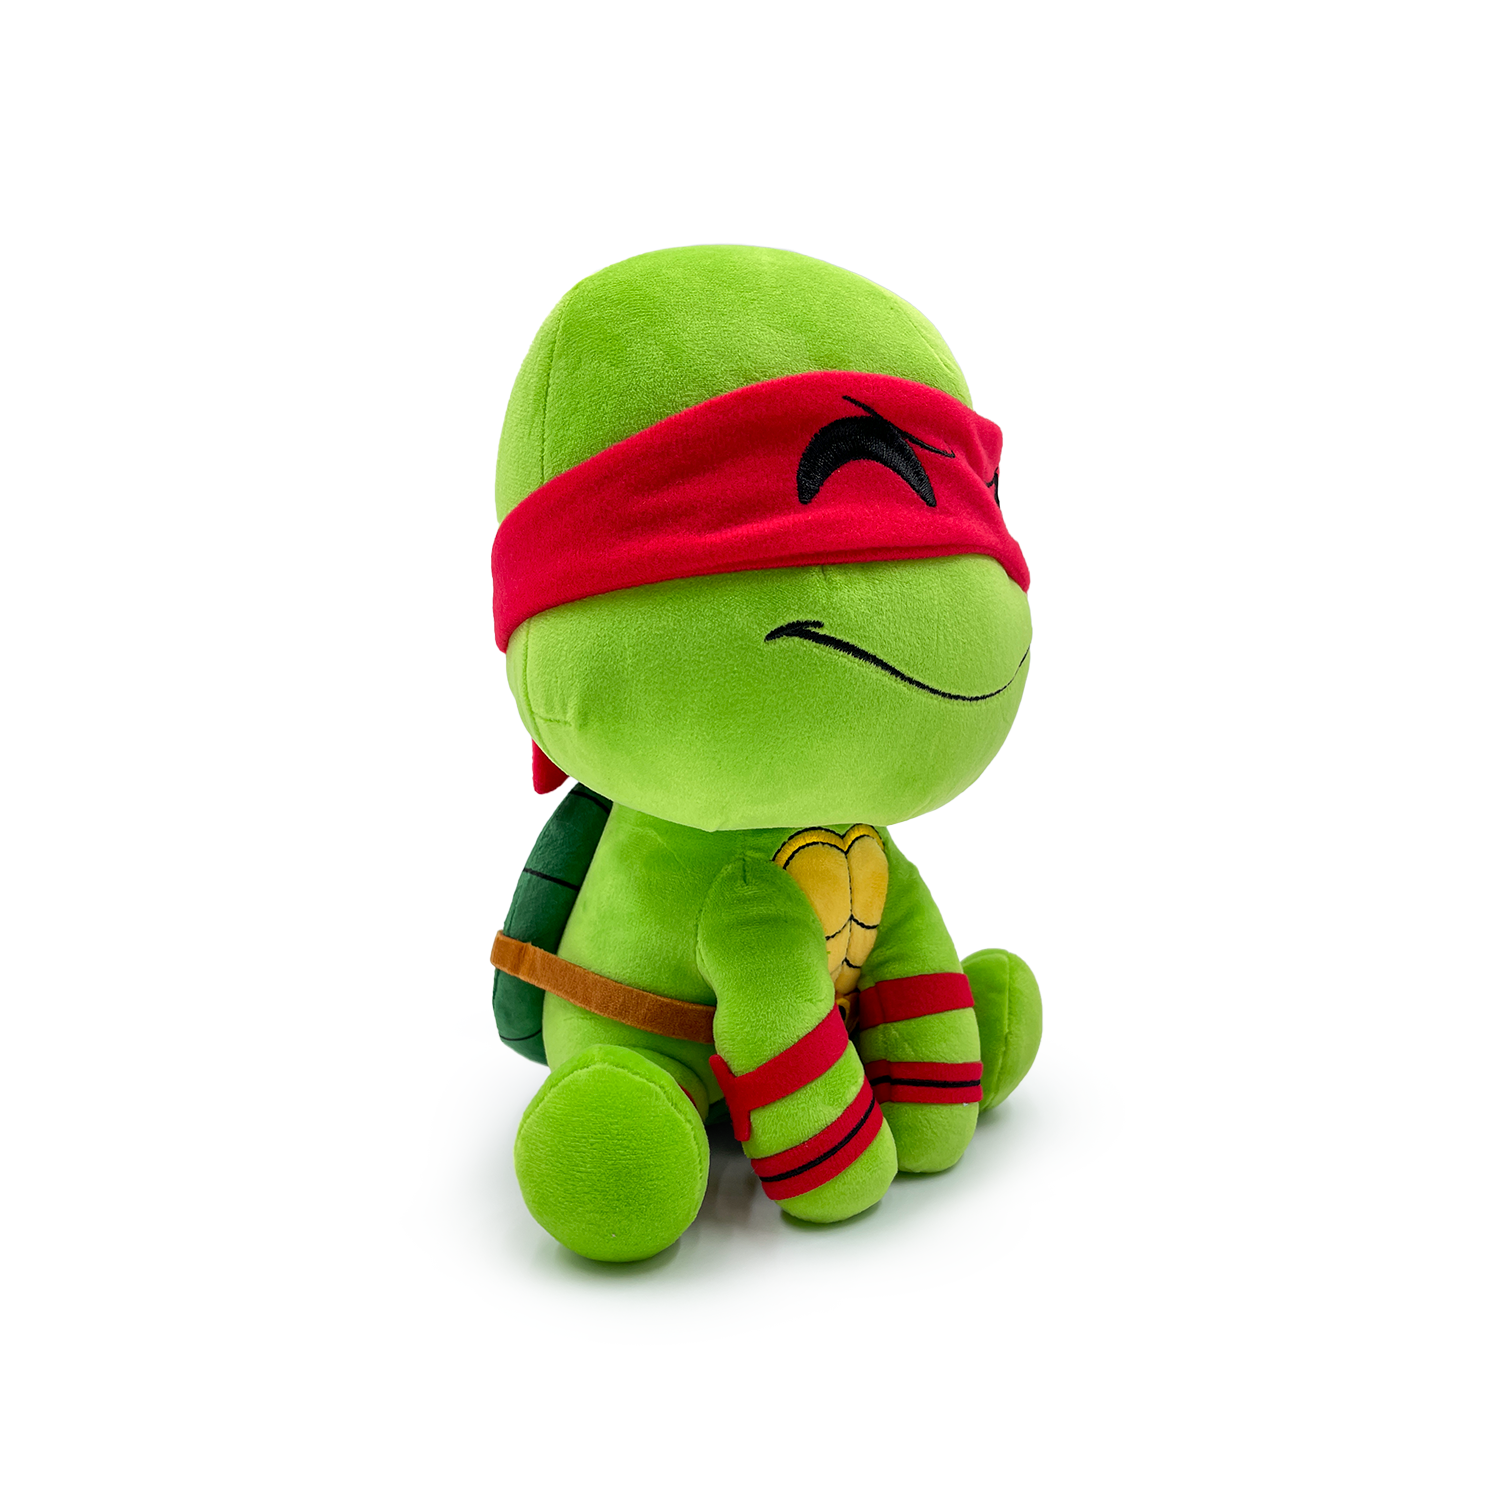 Teenage Mutant Ninja Turtles Raphael Plush